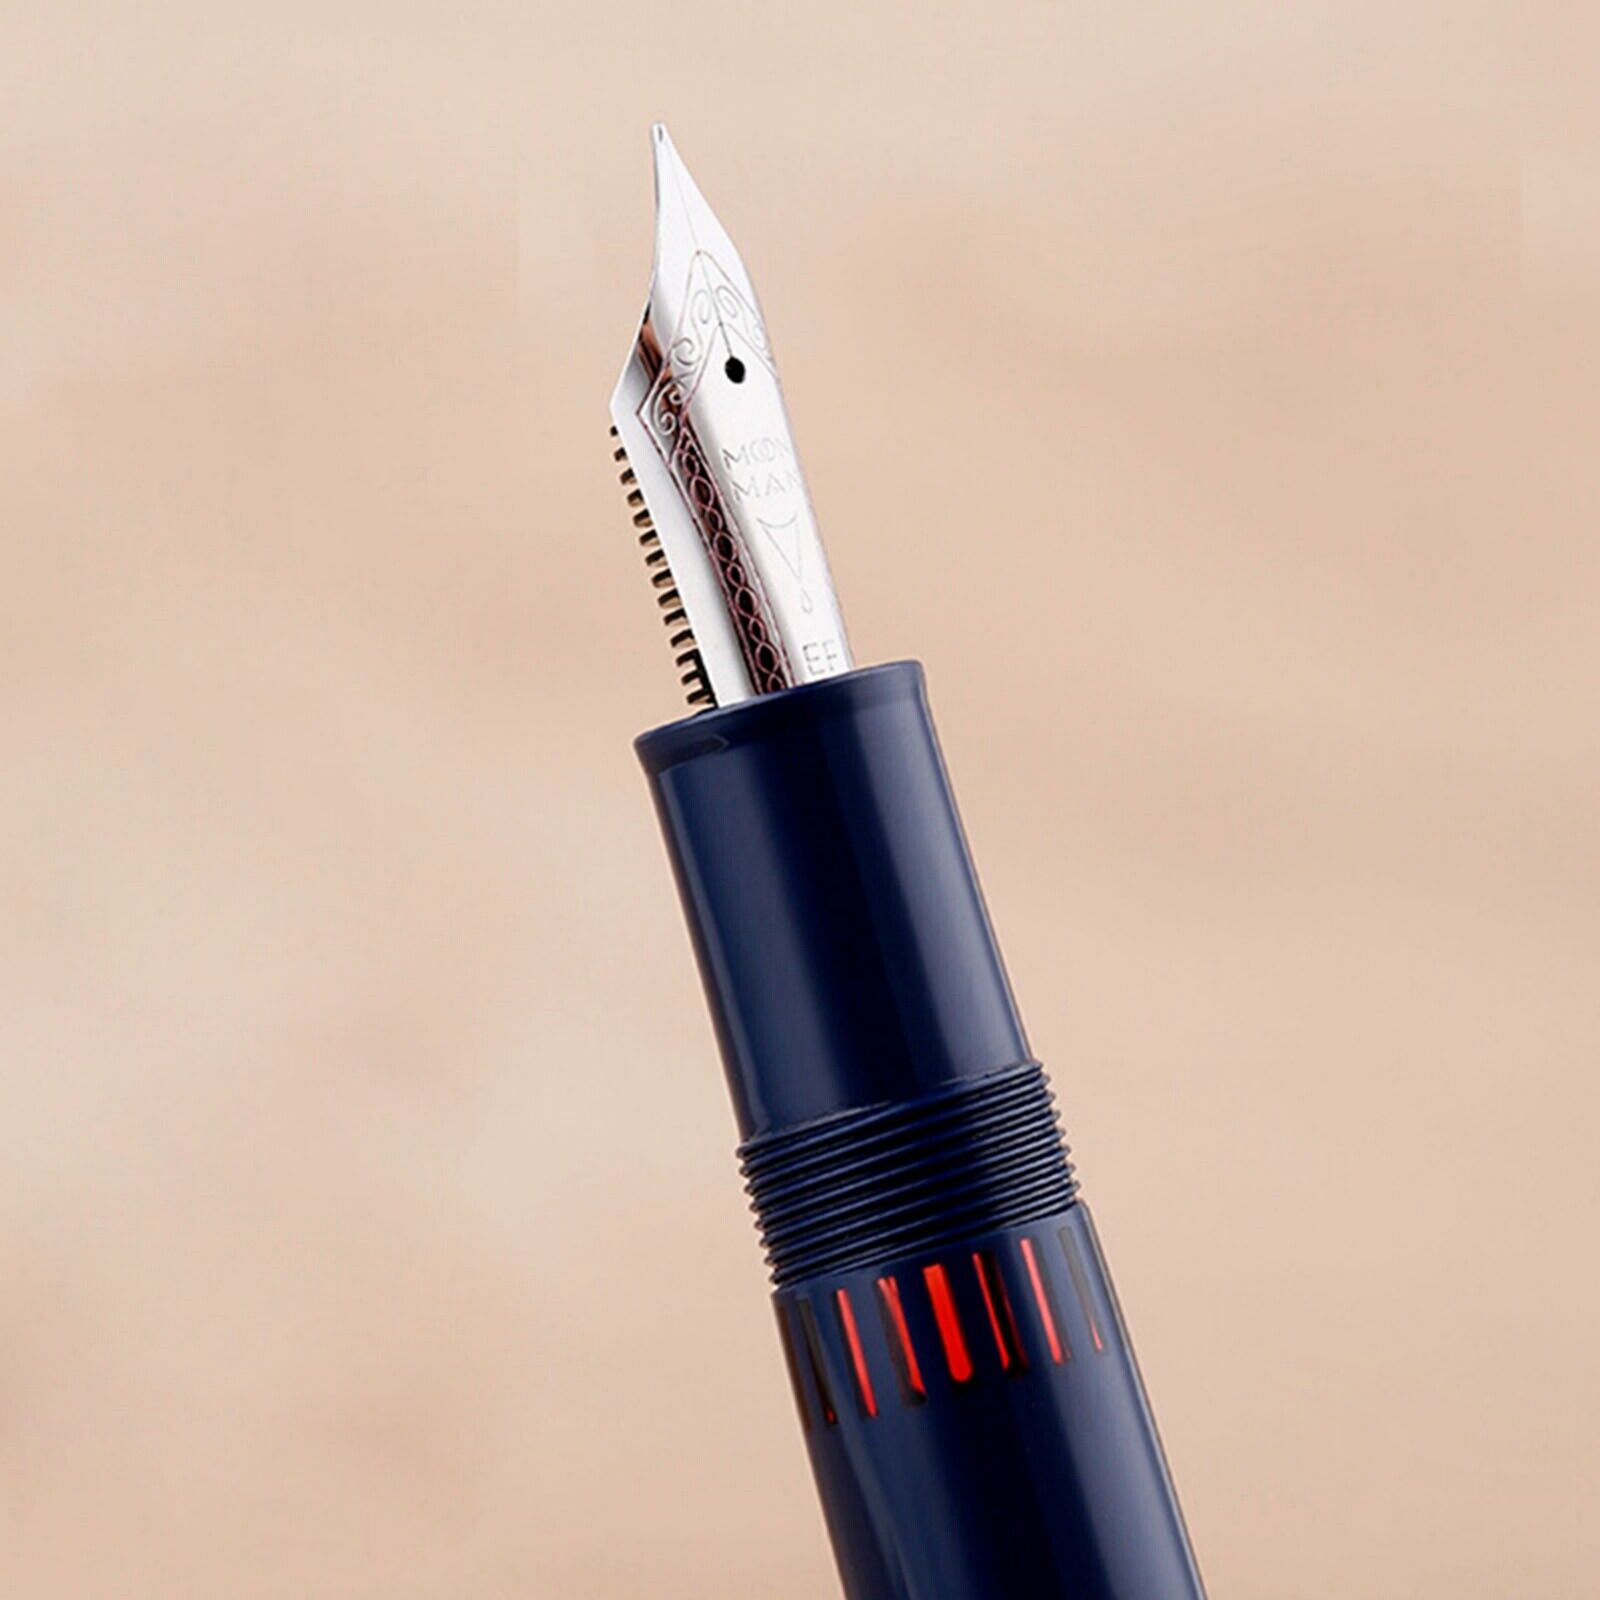 MAJOHN A2 Press Retractable Fountain Pen EF Nib Resin Writing Office Ink Pen